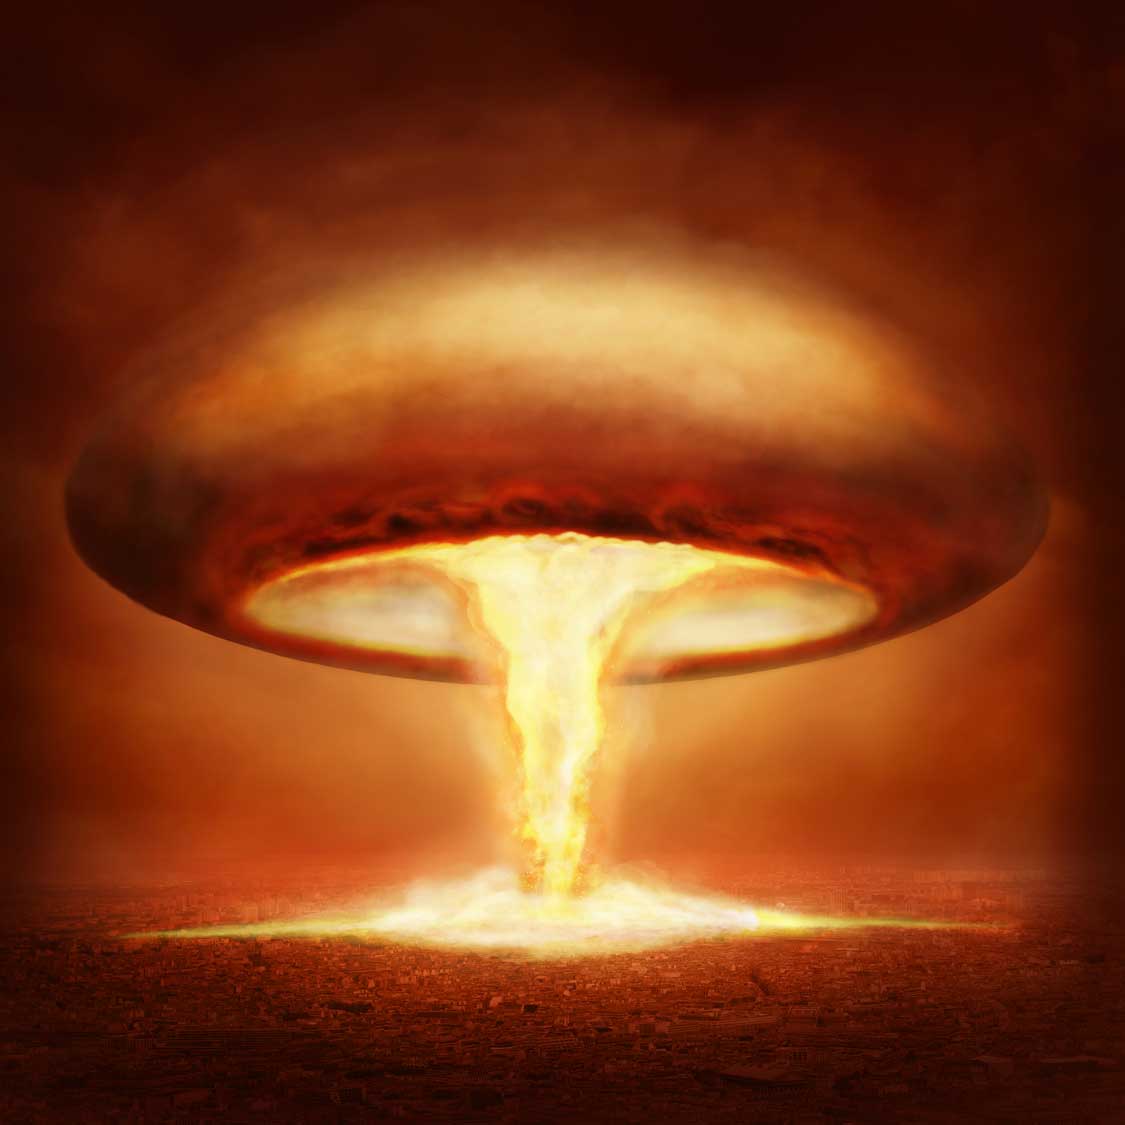 Imágenes de explosiones nucleares